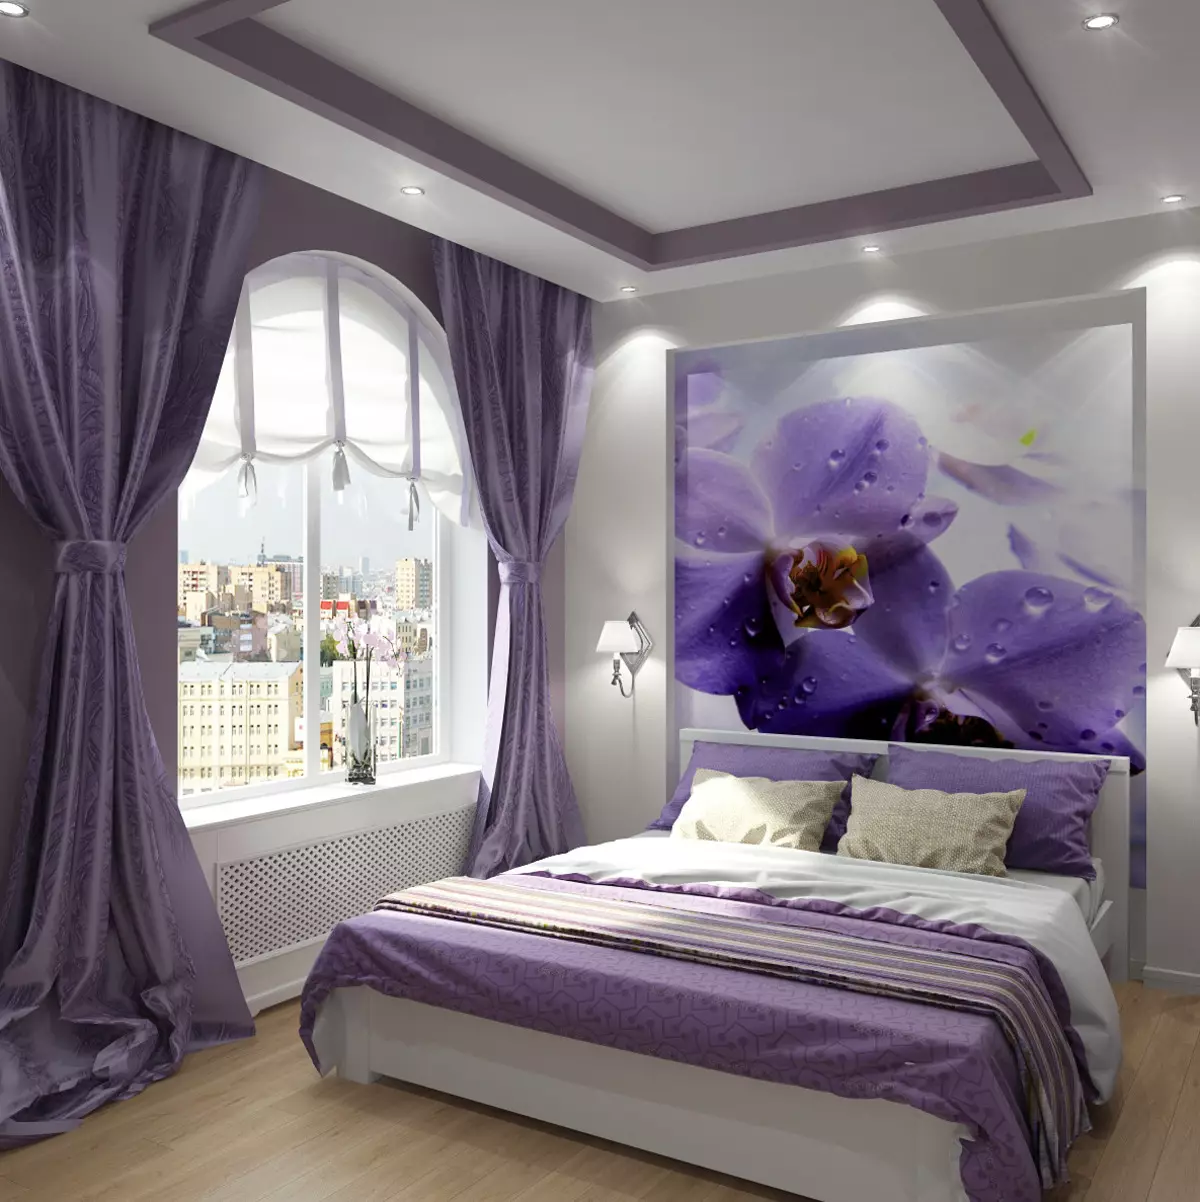 Lilac turu (95 foto): Apa nada wallpaper lan langsir kanggo milih? Gagasan kanggo desain interior, kombinasi karo warna lavender lan putih. Apa perabotan digabungake? 9881_73